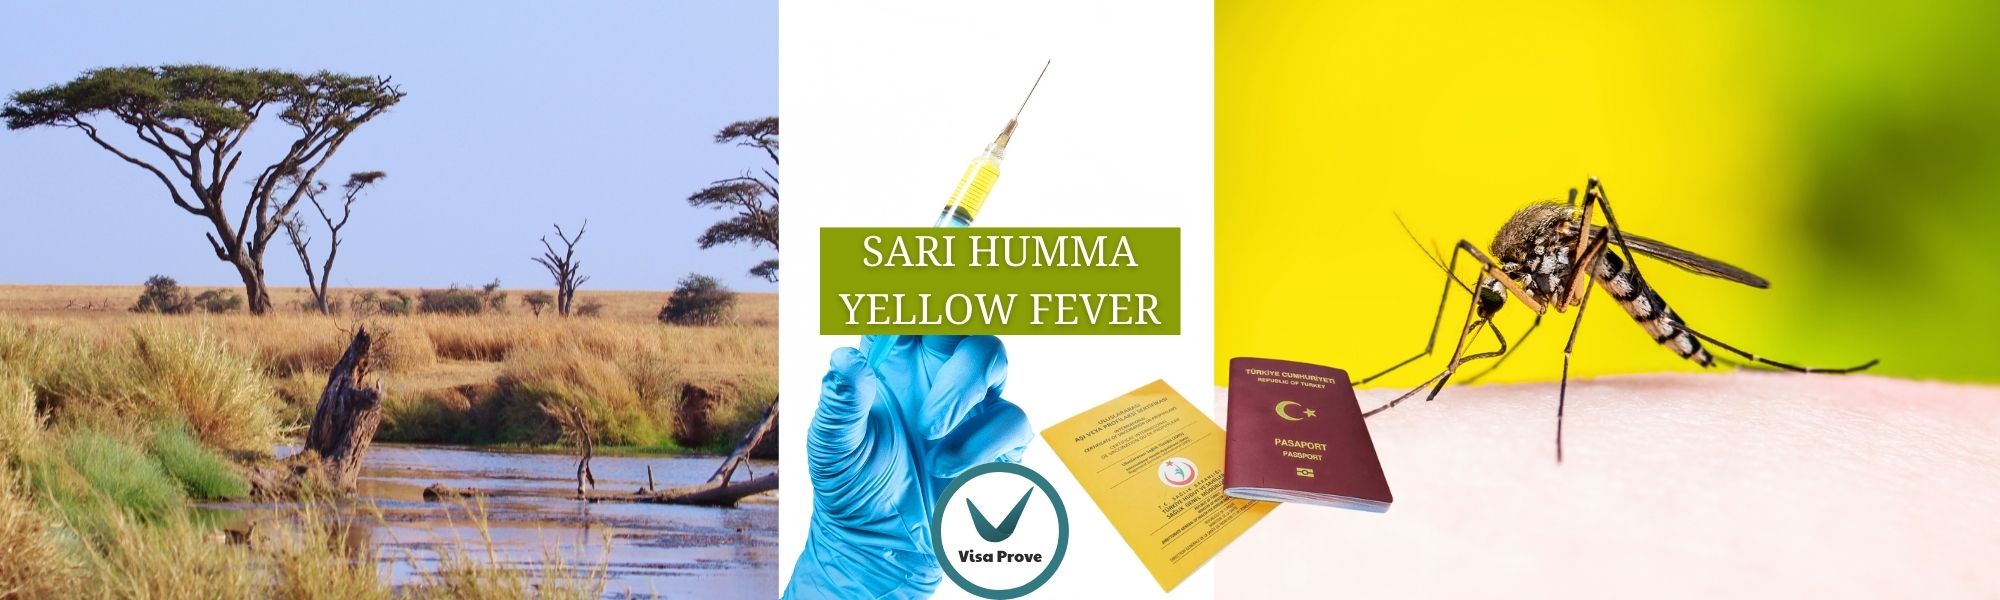 Sarı Humma (Yellow Fever) Aşısı